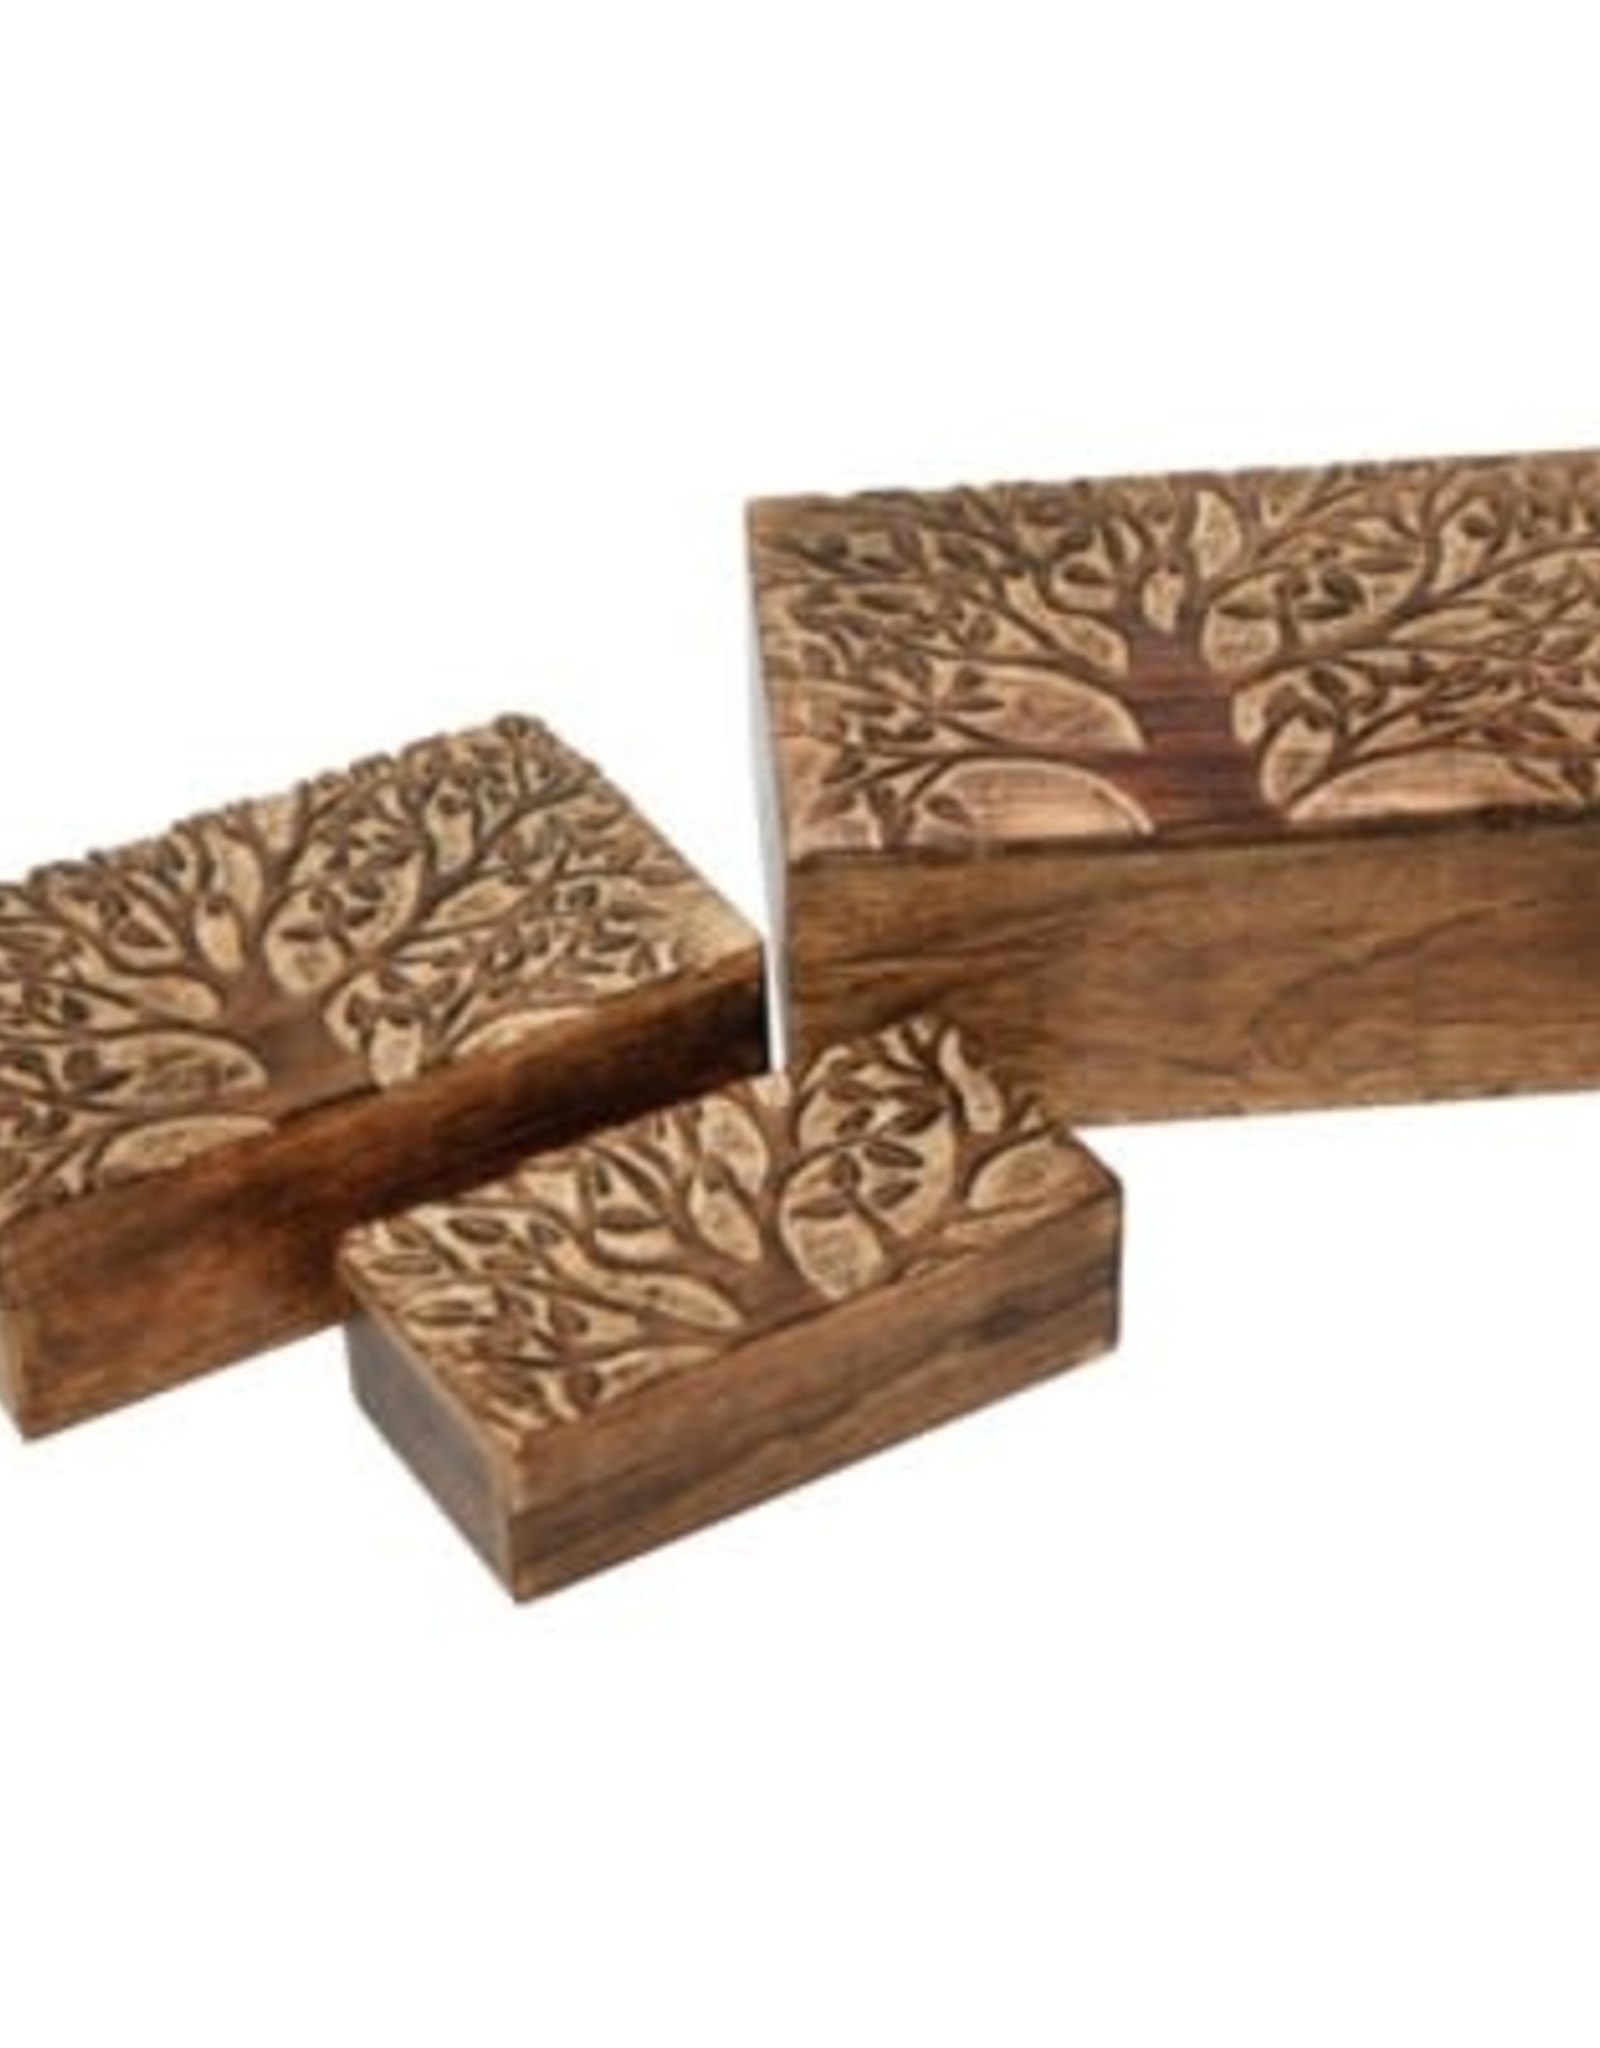 Jafsons Int. Mango Wood Box - Large Rectangle